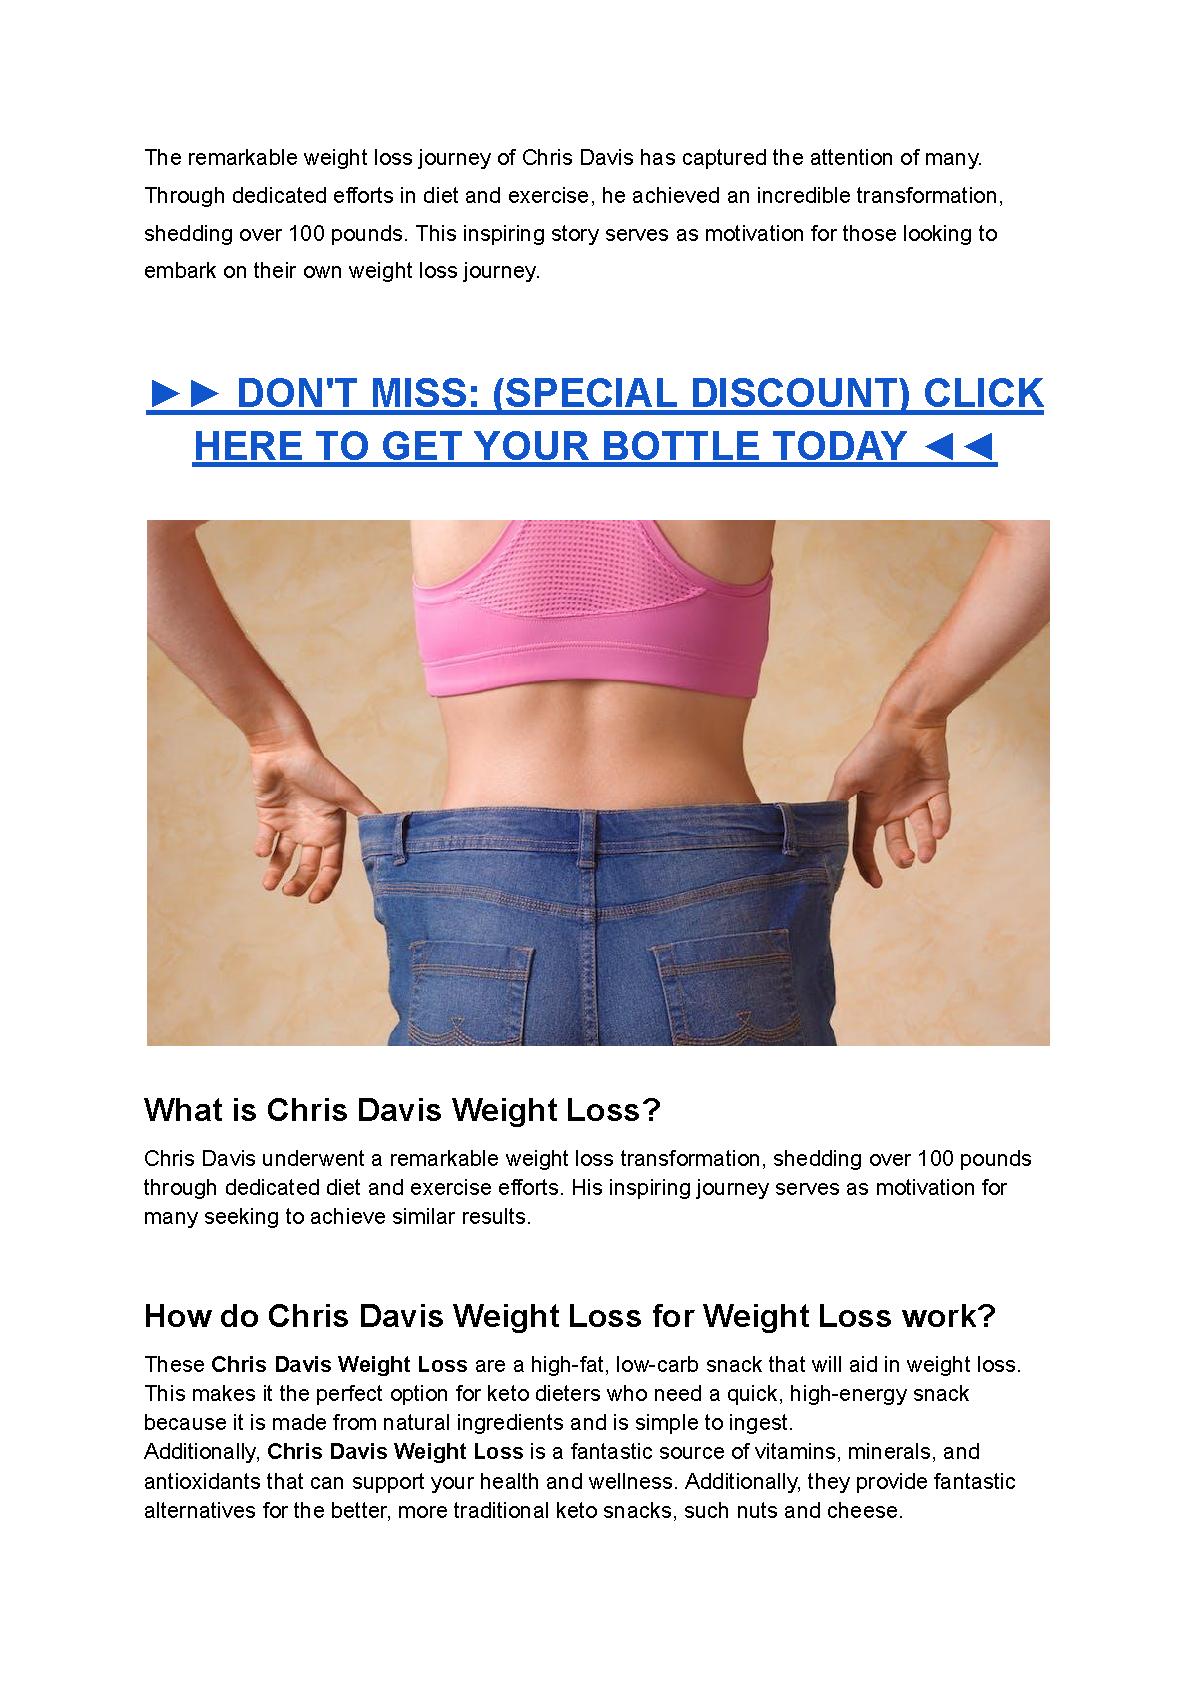 Chris Davis Weight Loss